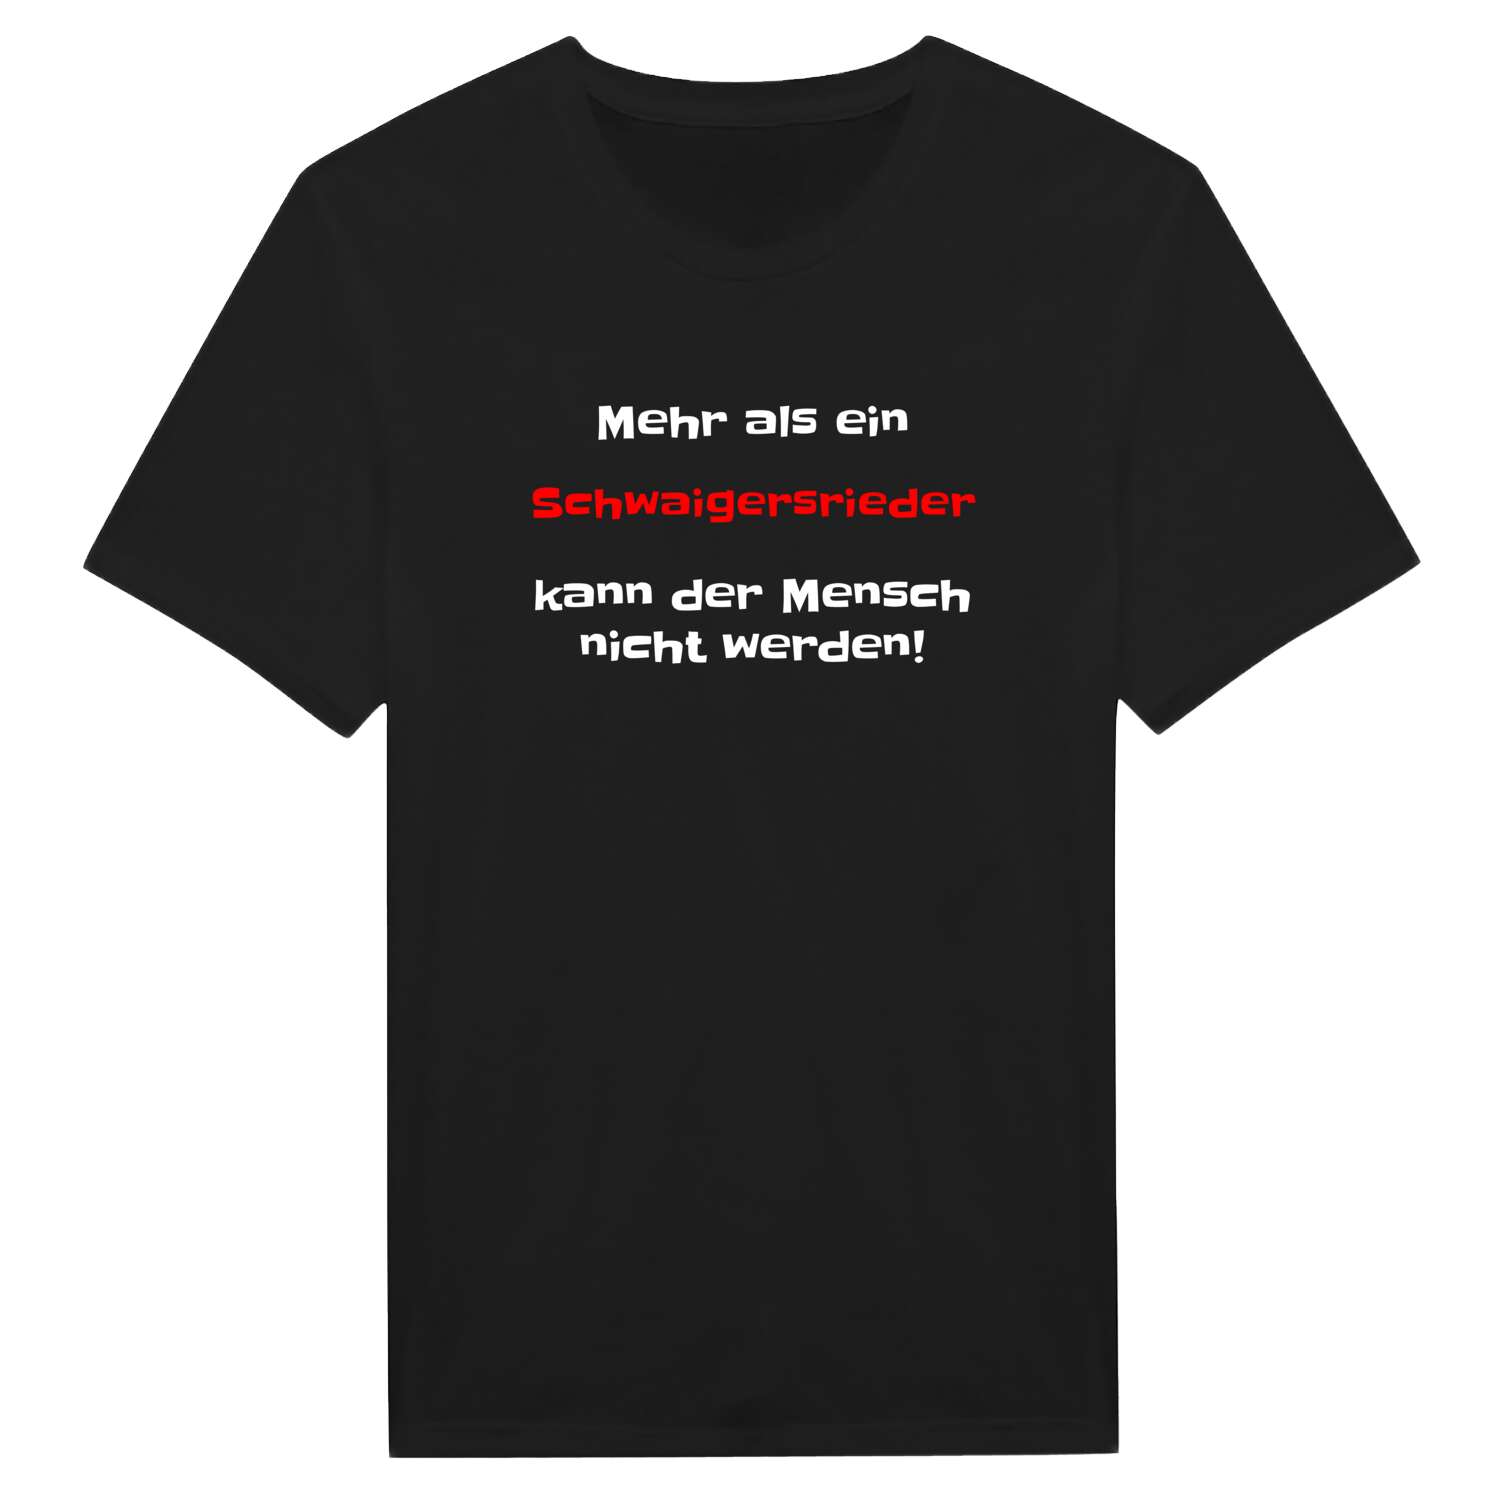 Schwaigersried T-Shirt »Mehr als ein«